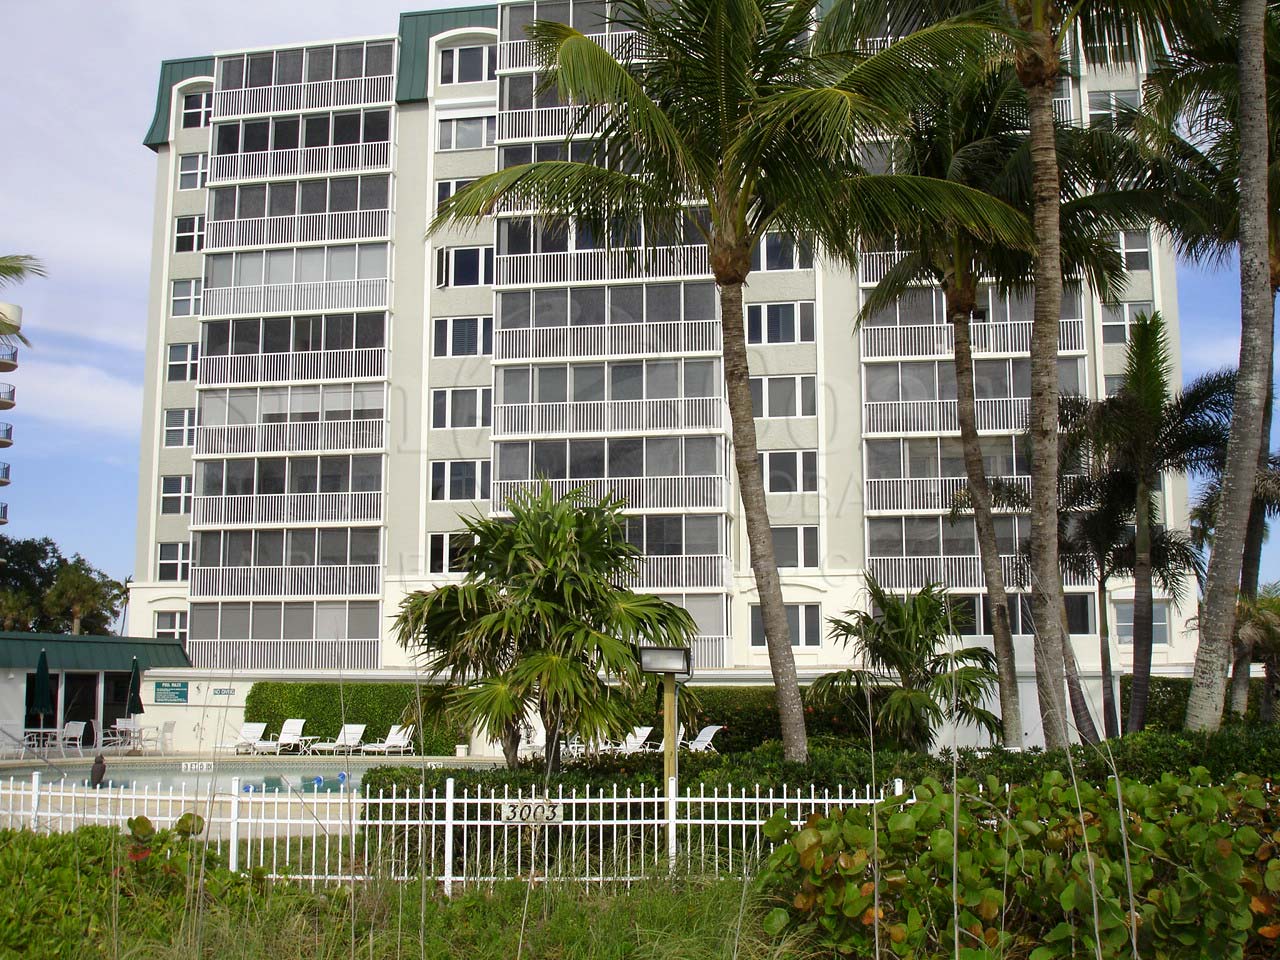 Martinique Club Condominium Building